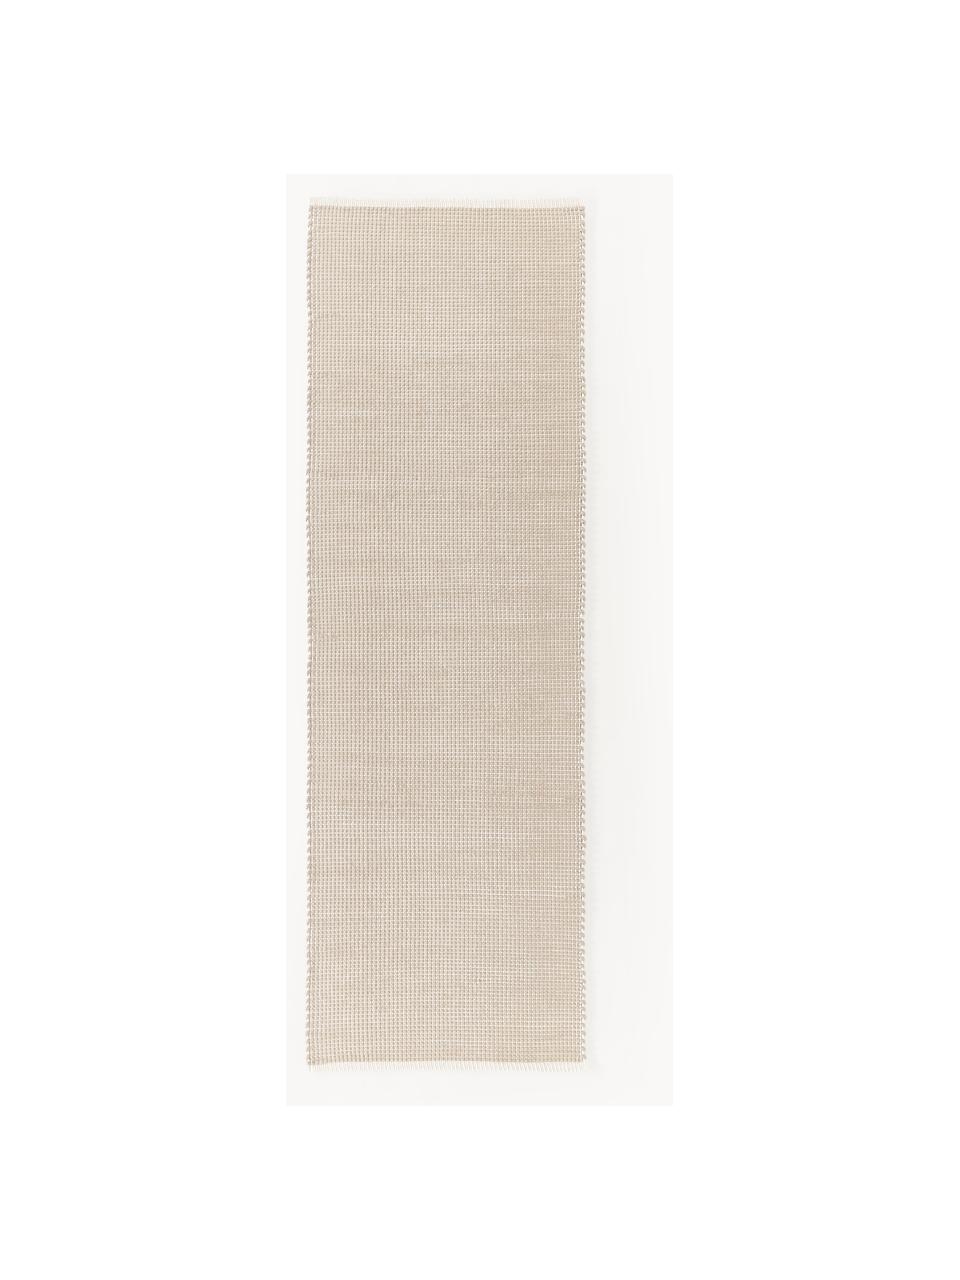 Passatoia in lana tessuta a mano Amaro, Retro: 100% cotone Il materiale , Beige chiaro, Larg. 80 x Lung. 250 cm